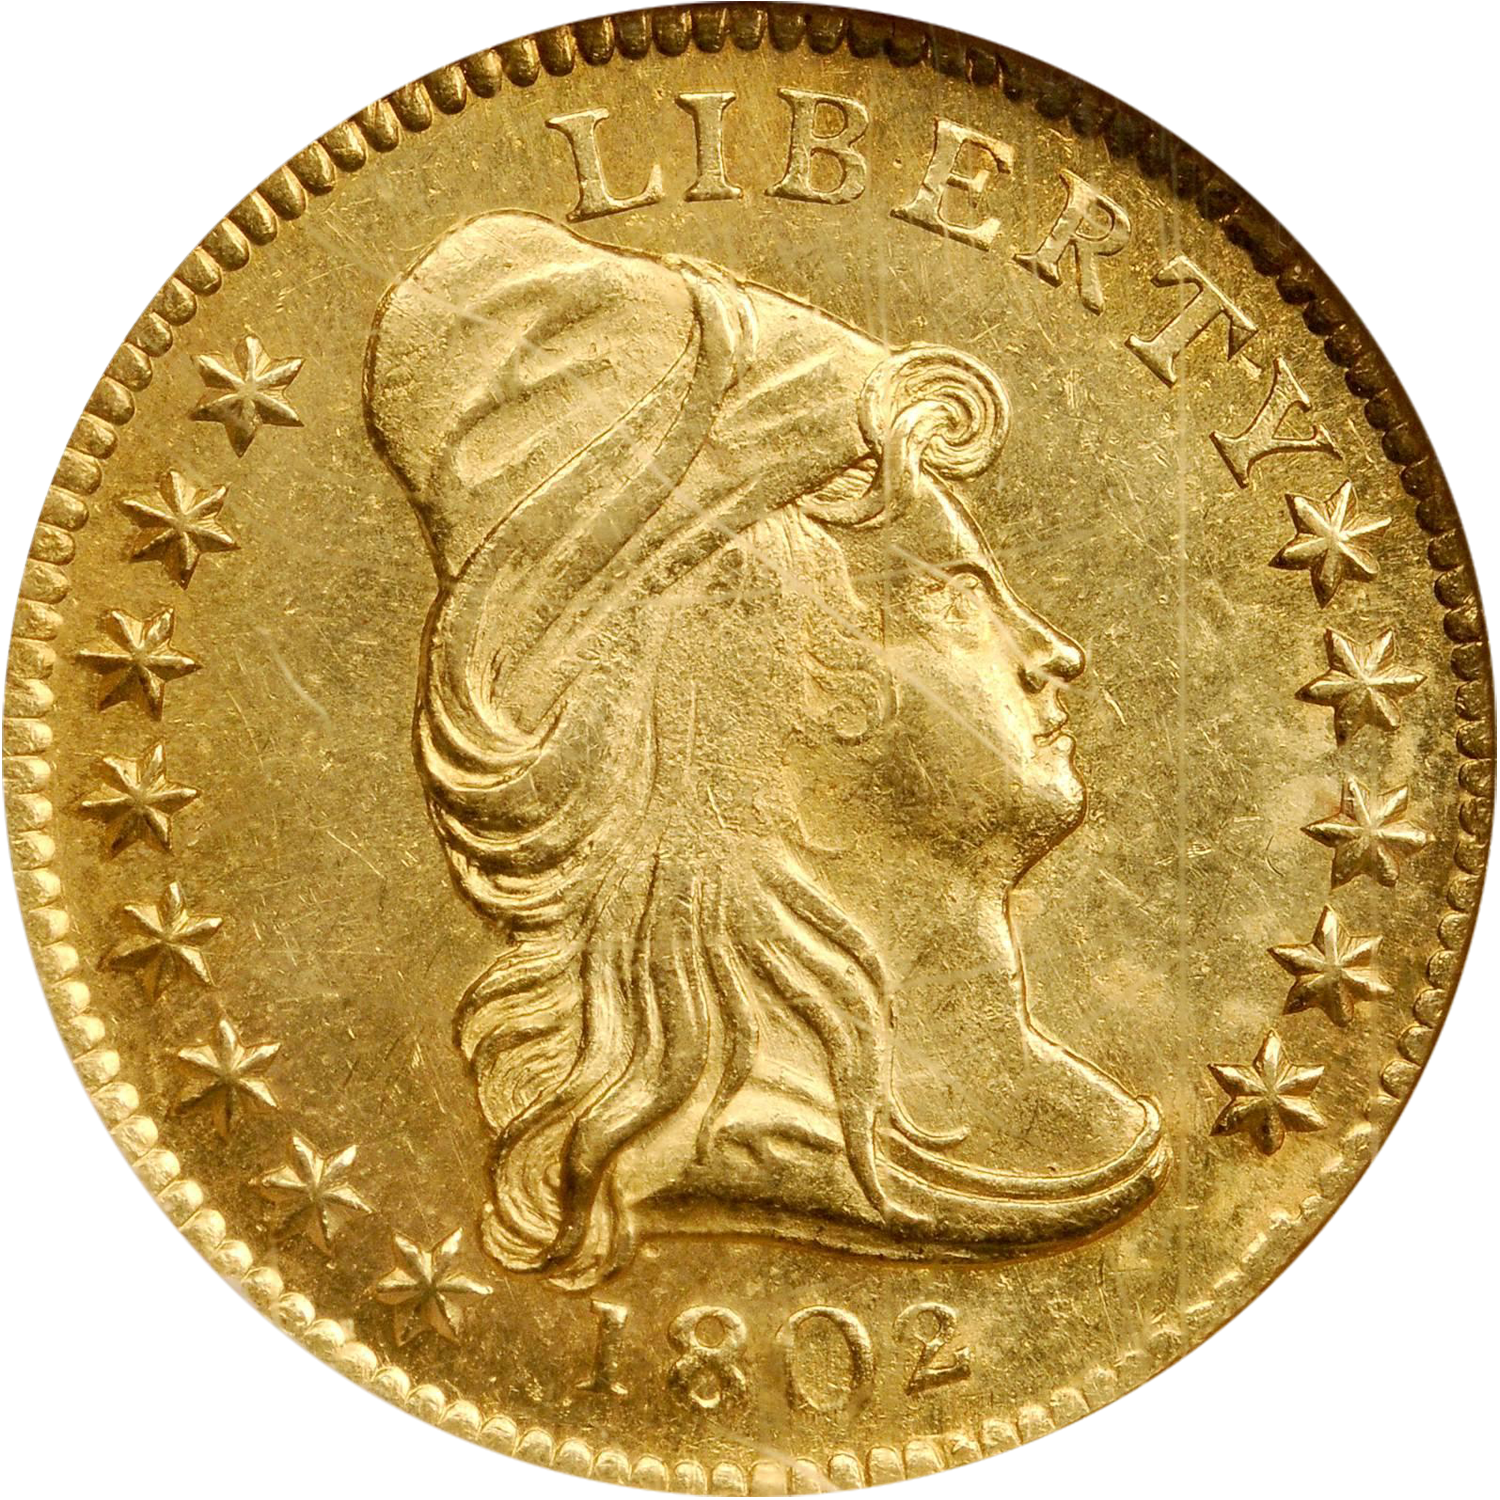 1802 gold quarter eagle auction guide